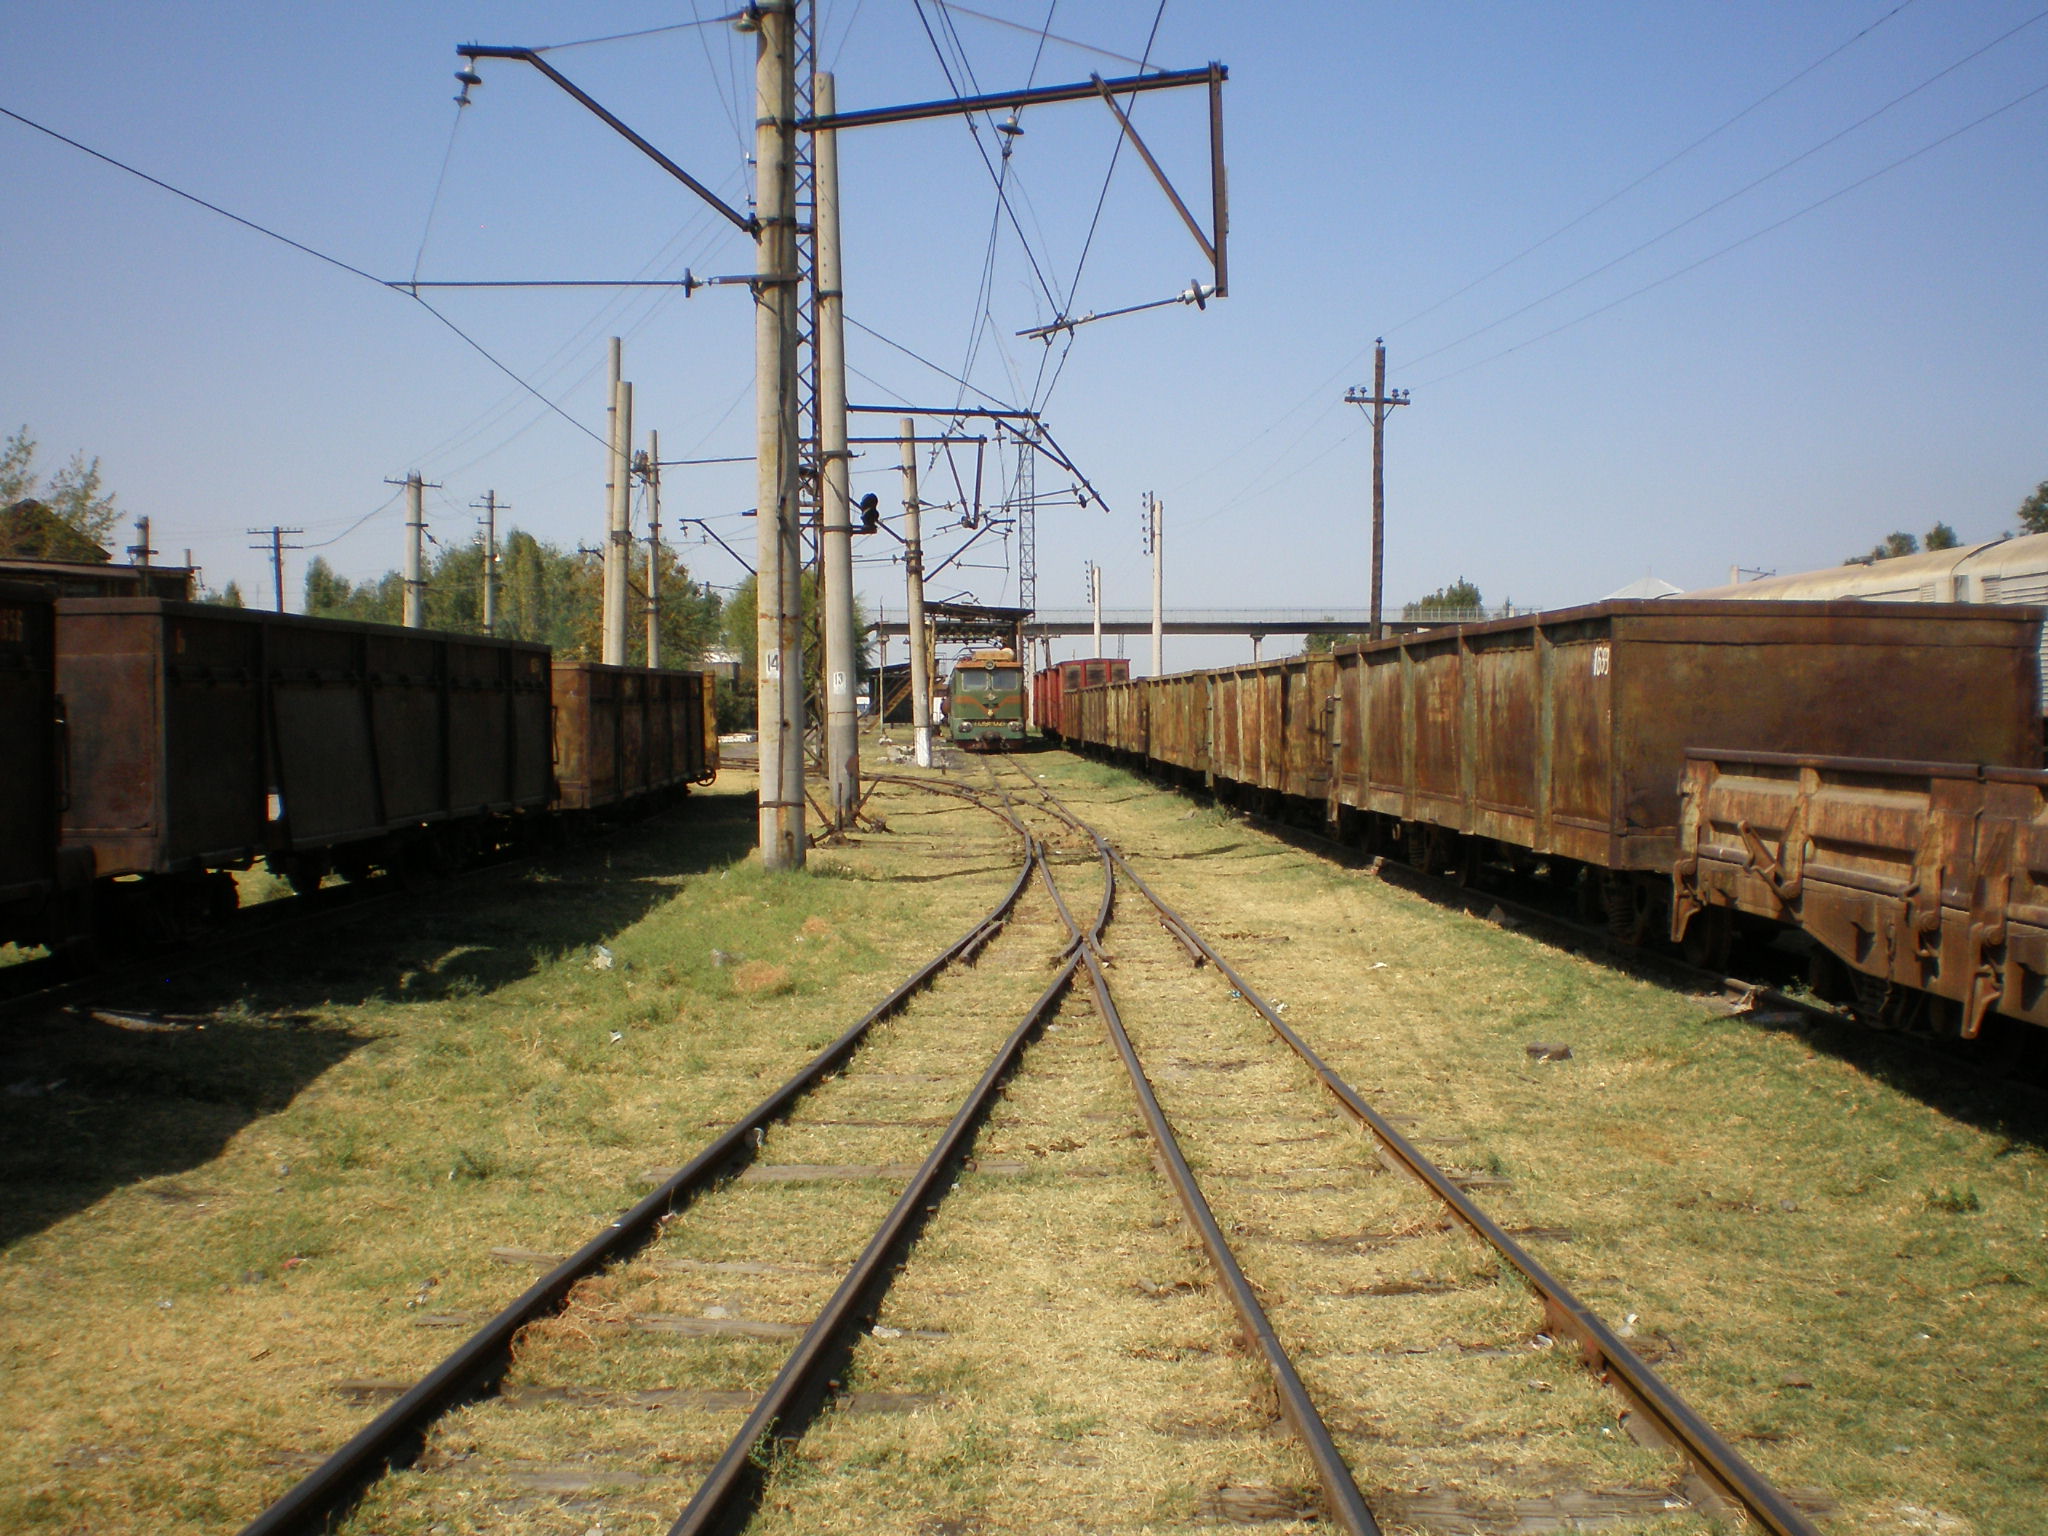 Сулюктинская узкоколейная железная дорога  —  фотографии, сделанные в 2008 году (часть 3)